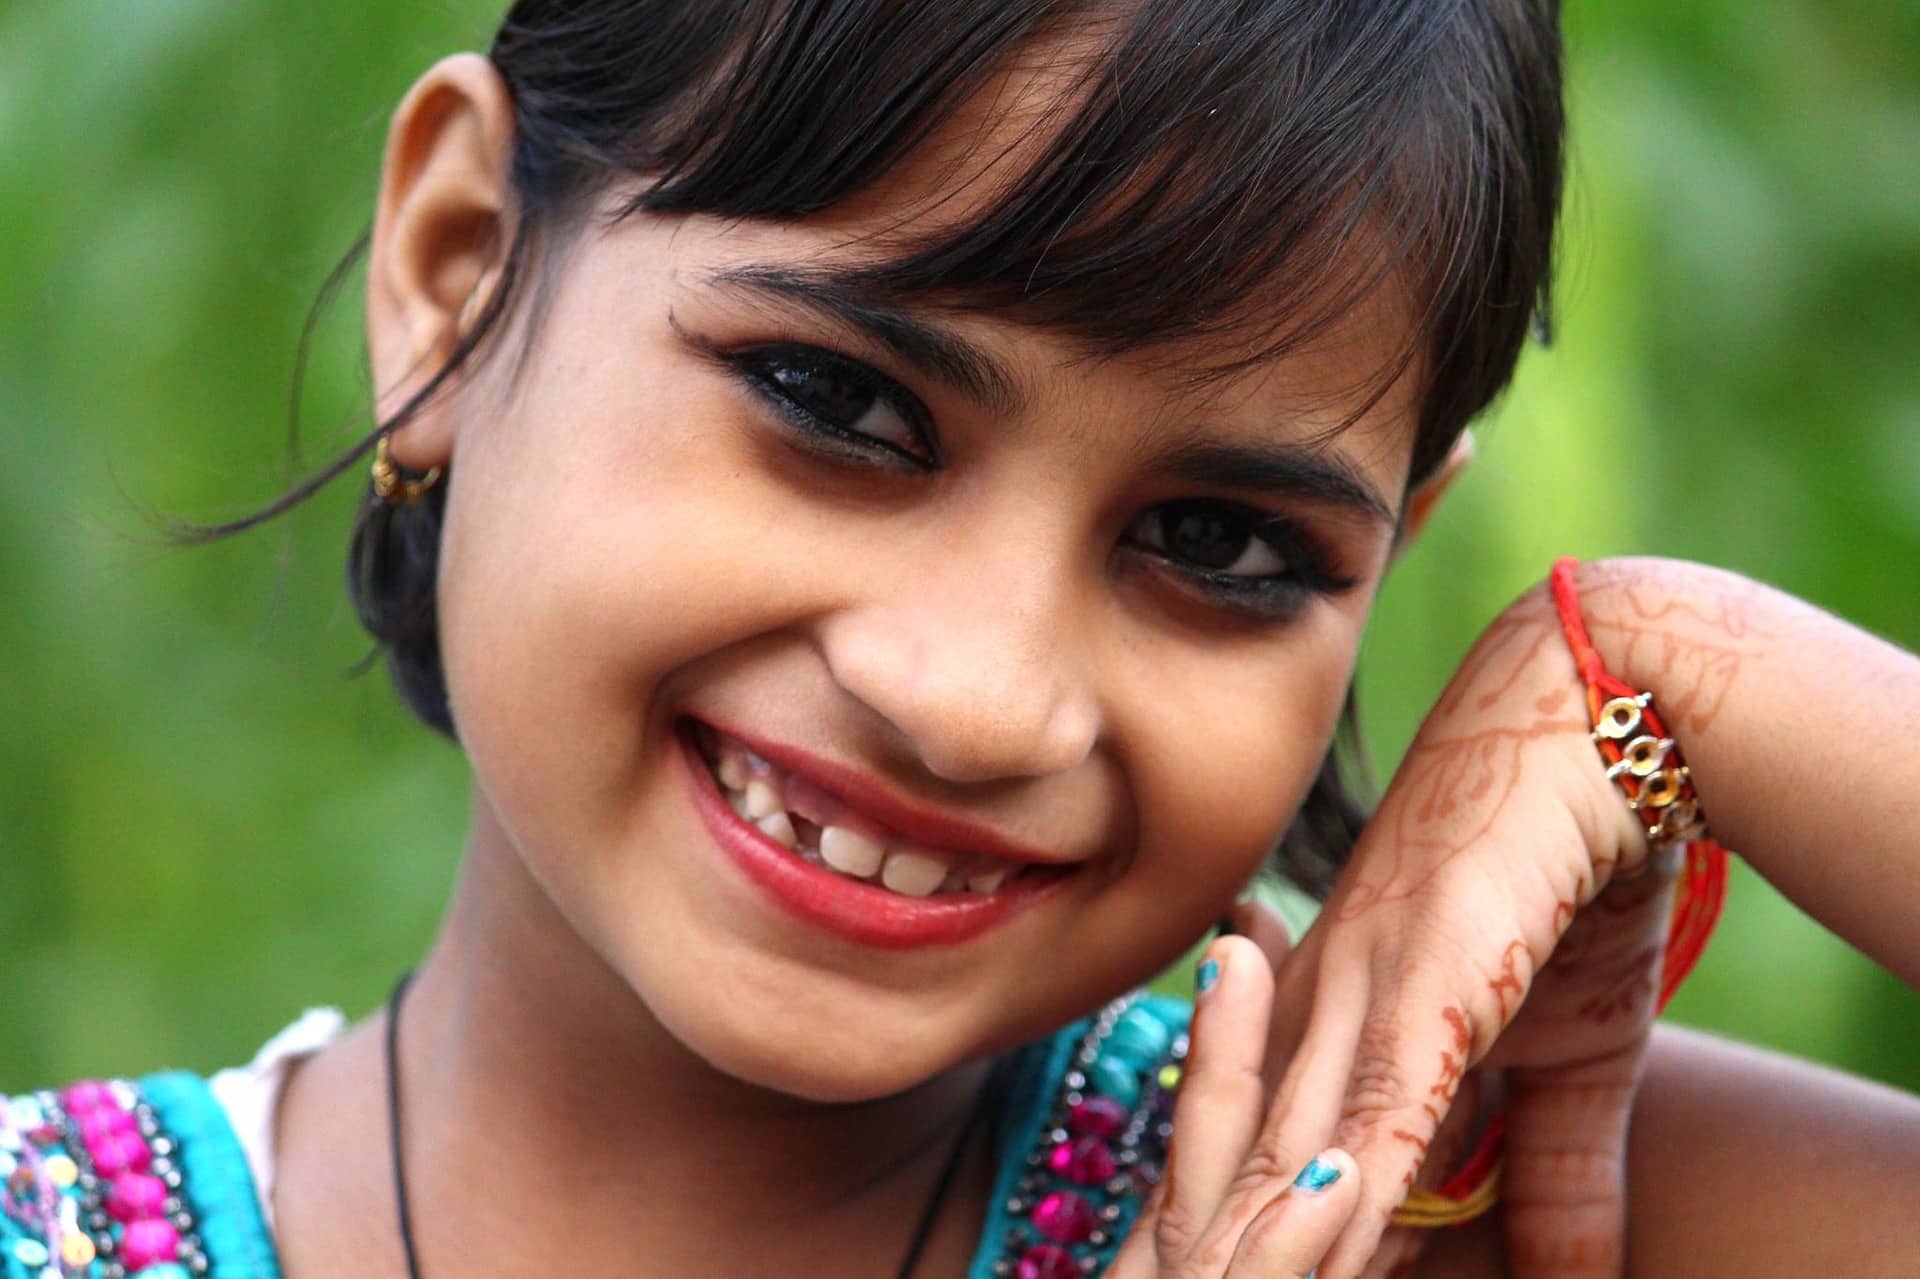 Volontariato Internazionale in India per l’autodifesa delle ragazze